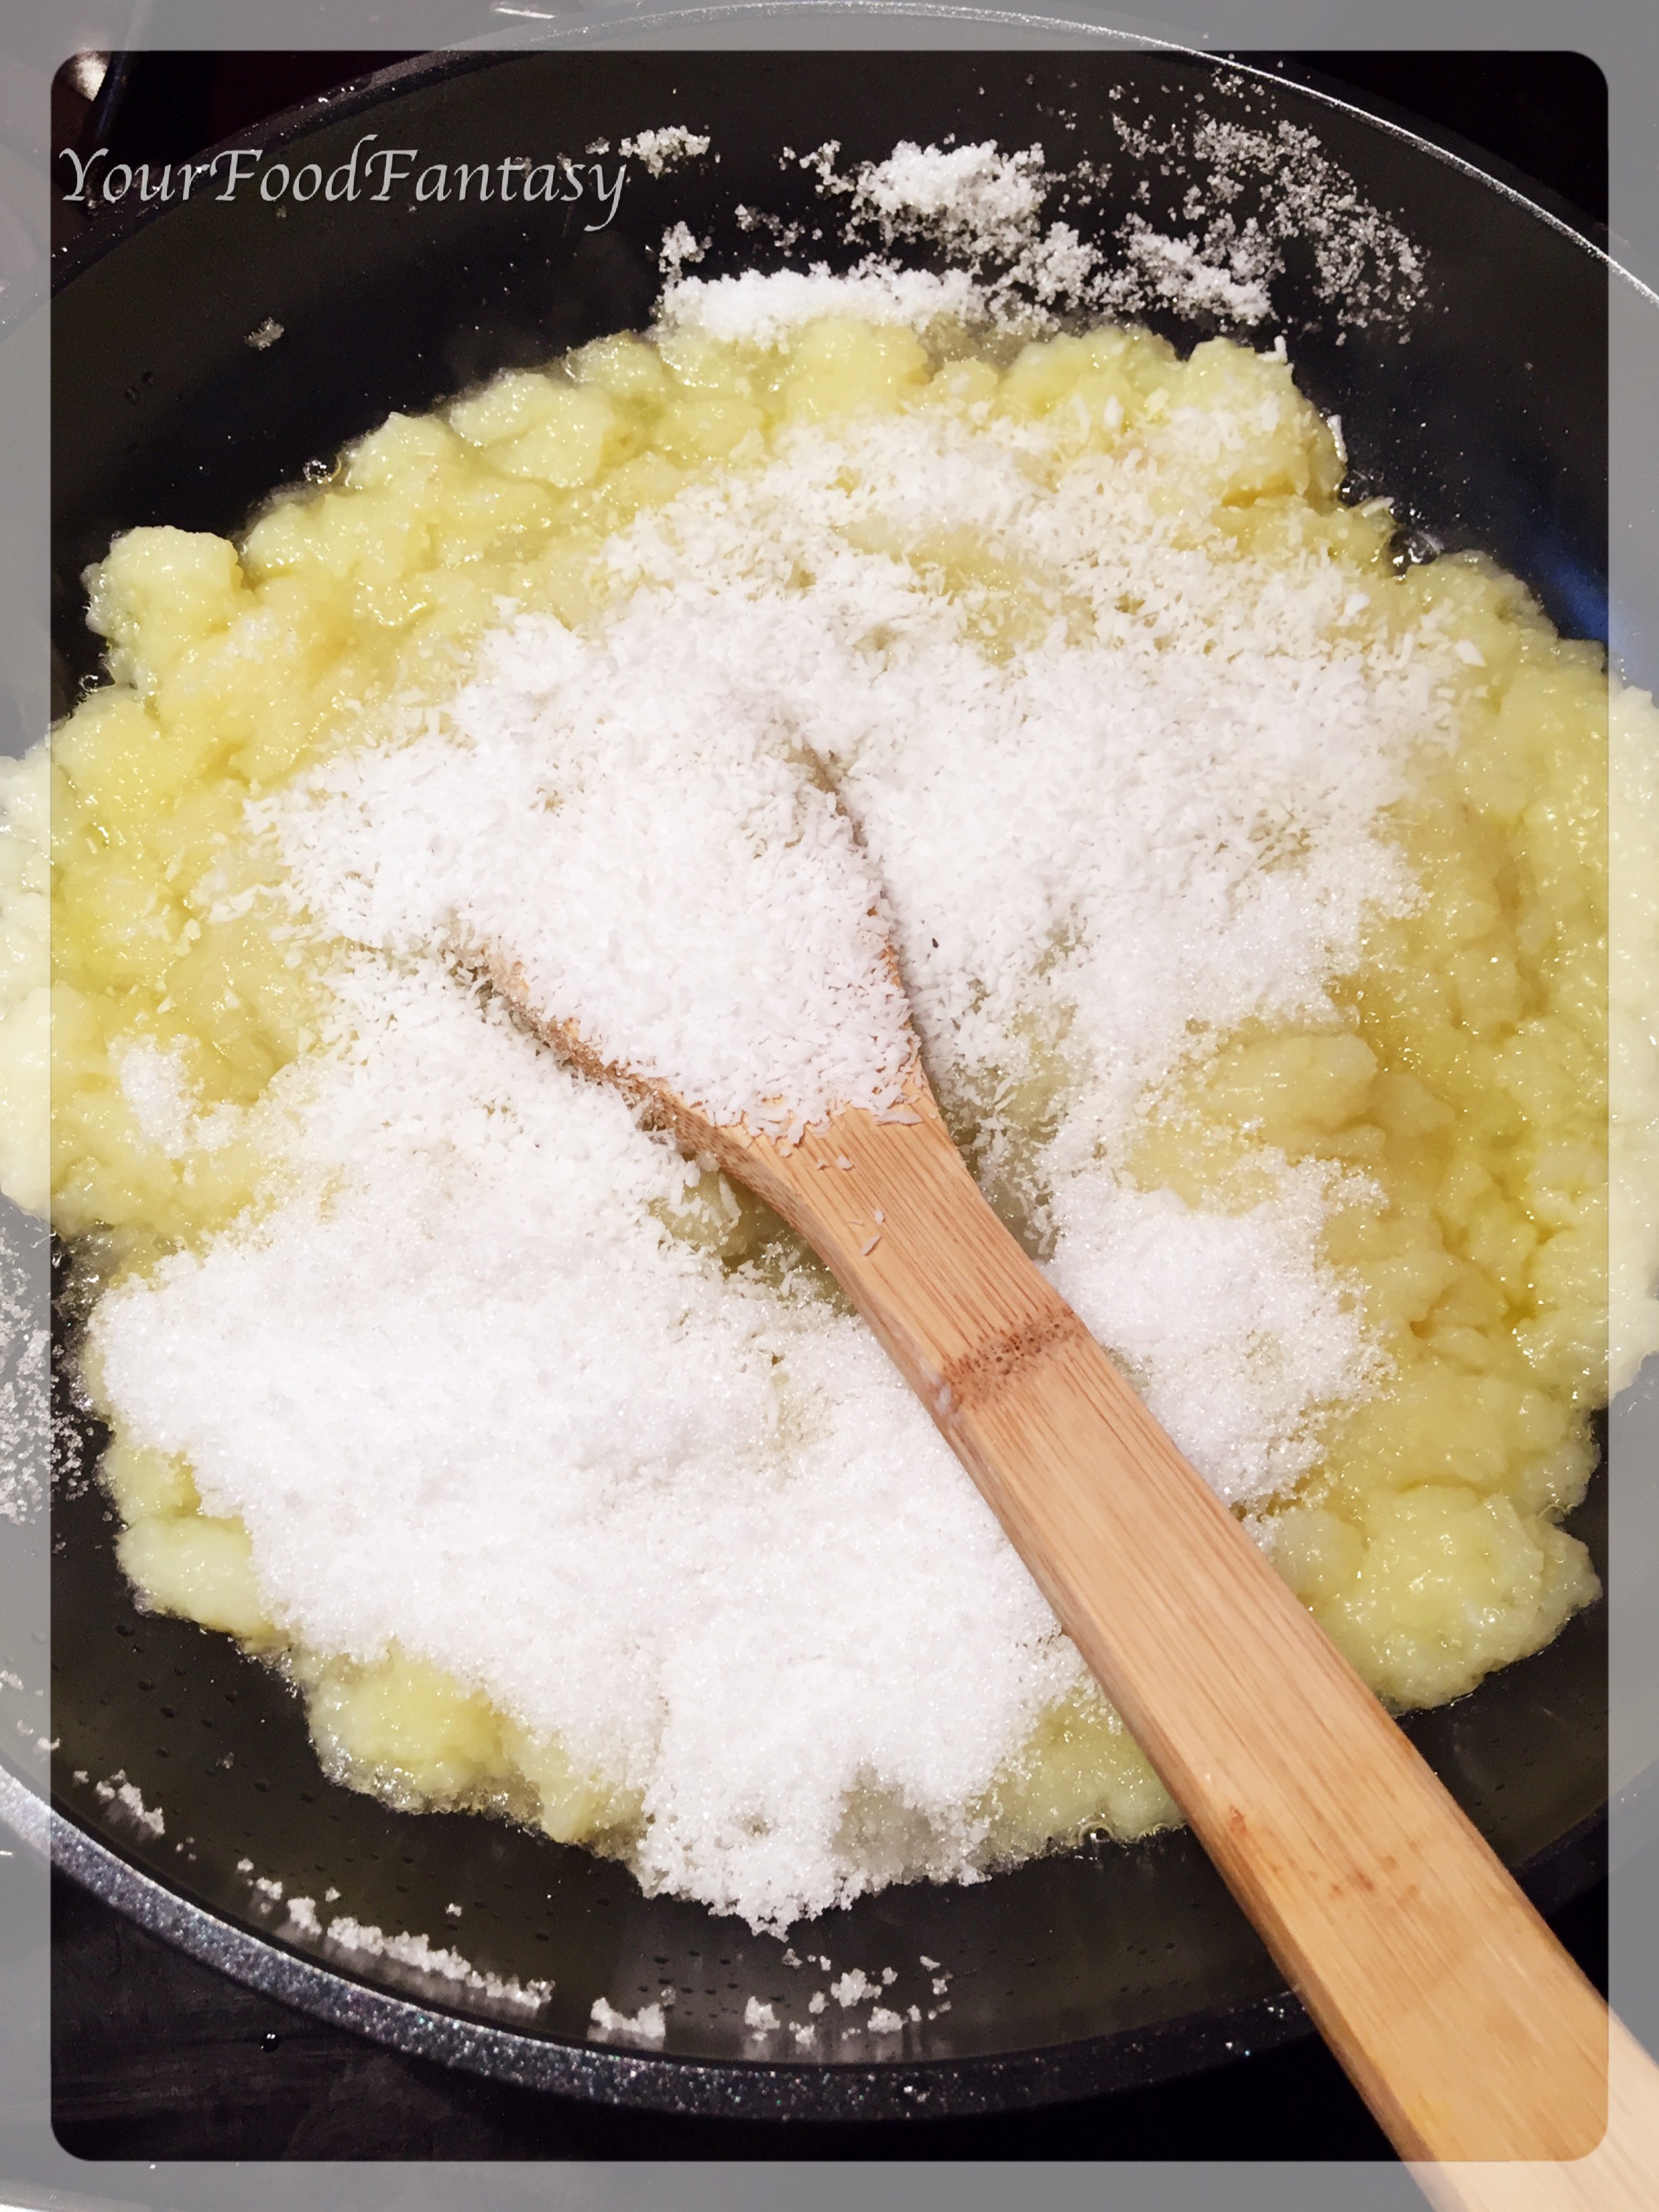 adding sugar in aalo halwa | yourfoodfantasy by meenu gupta